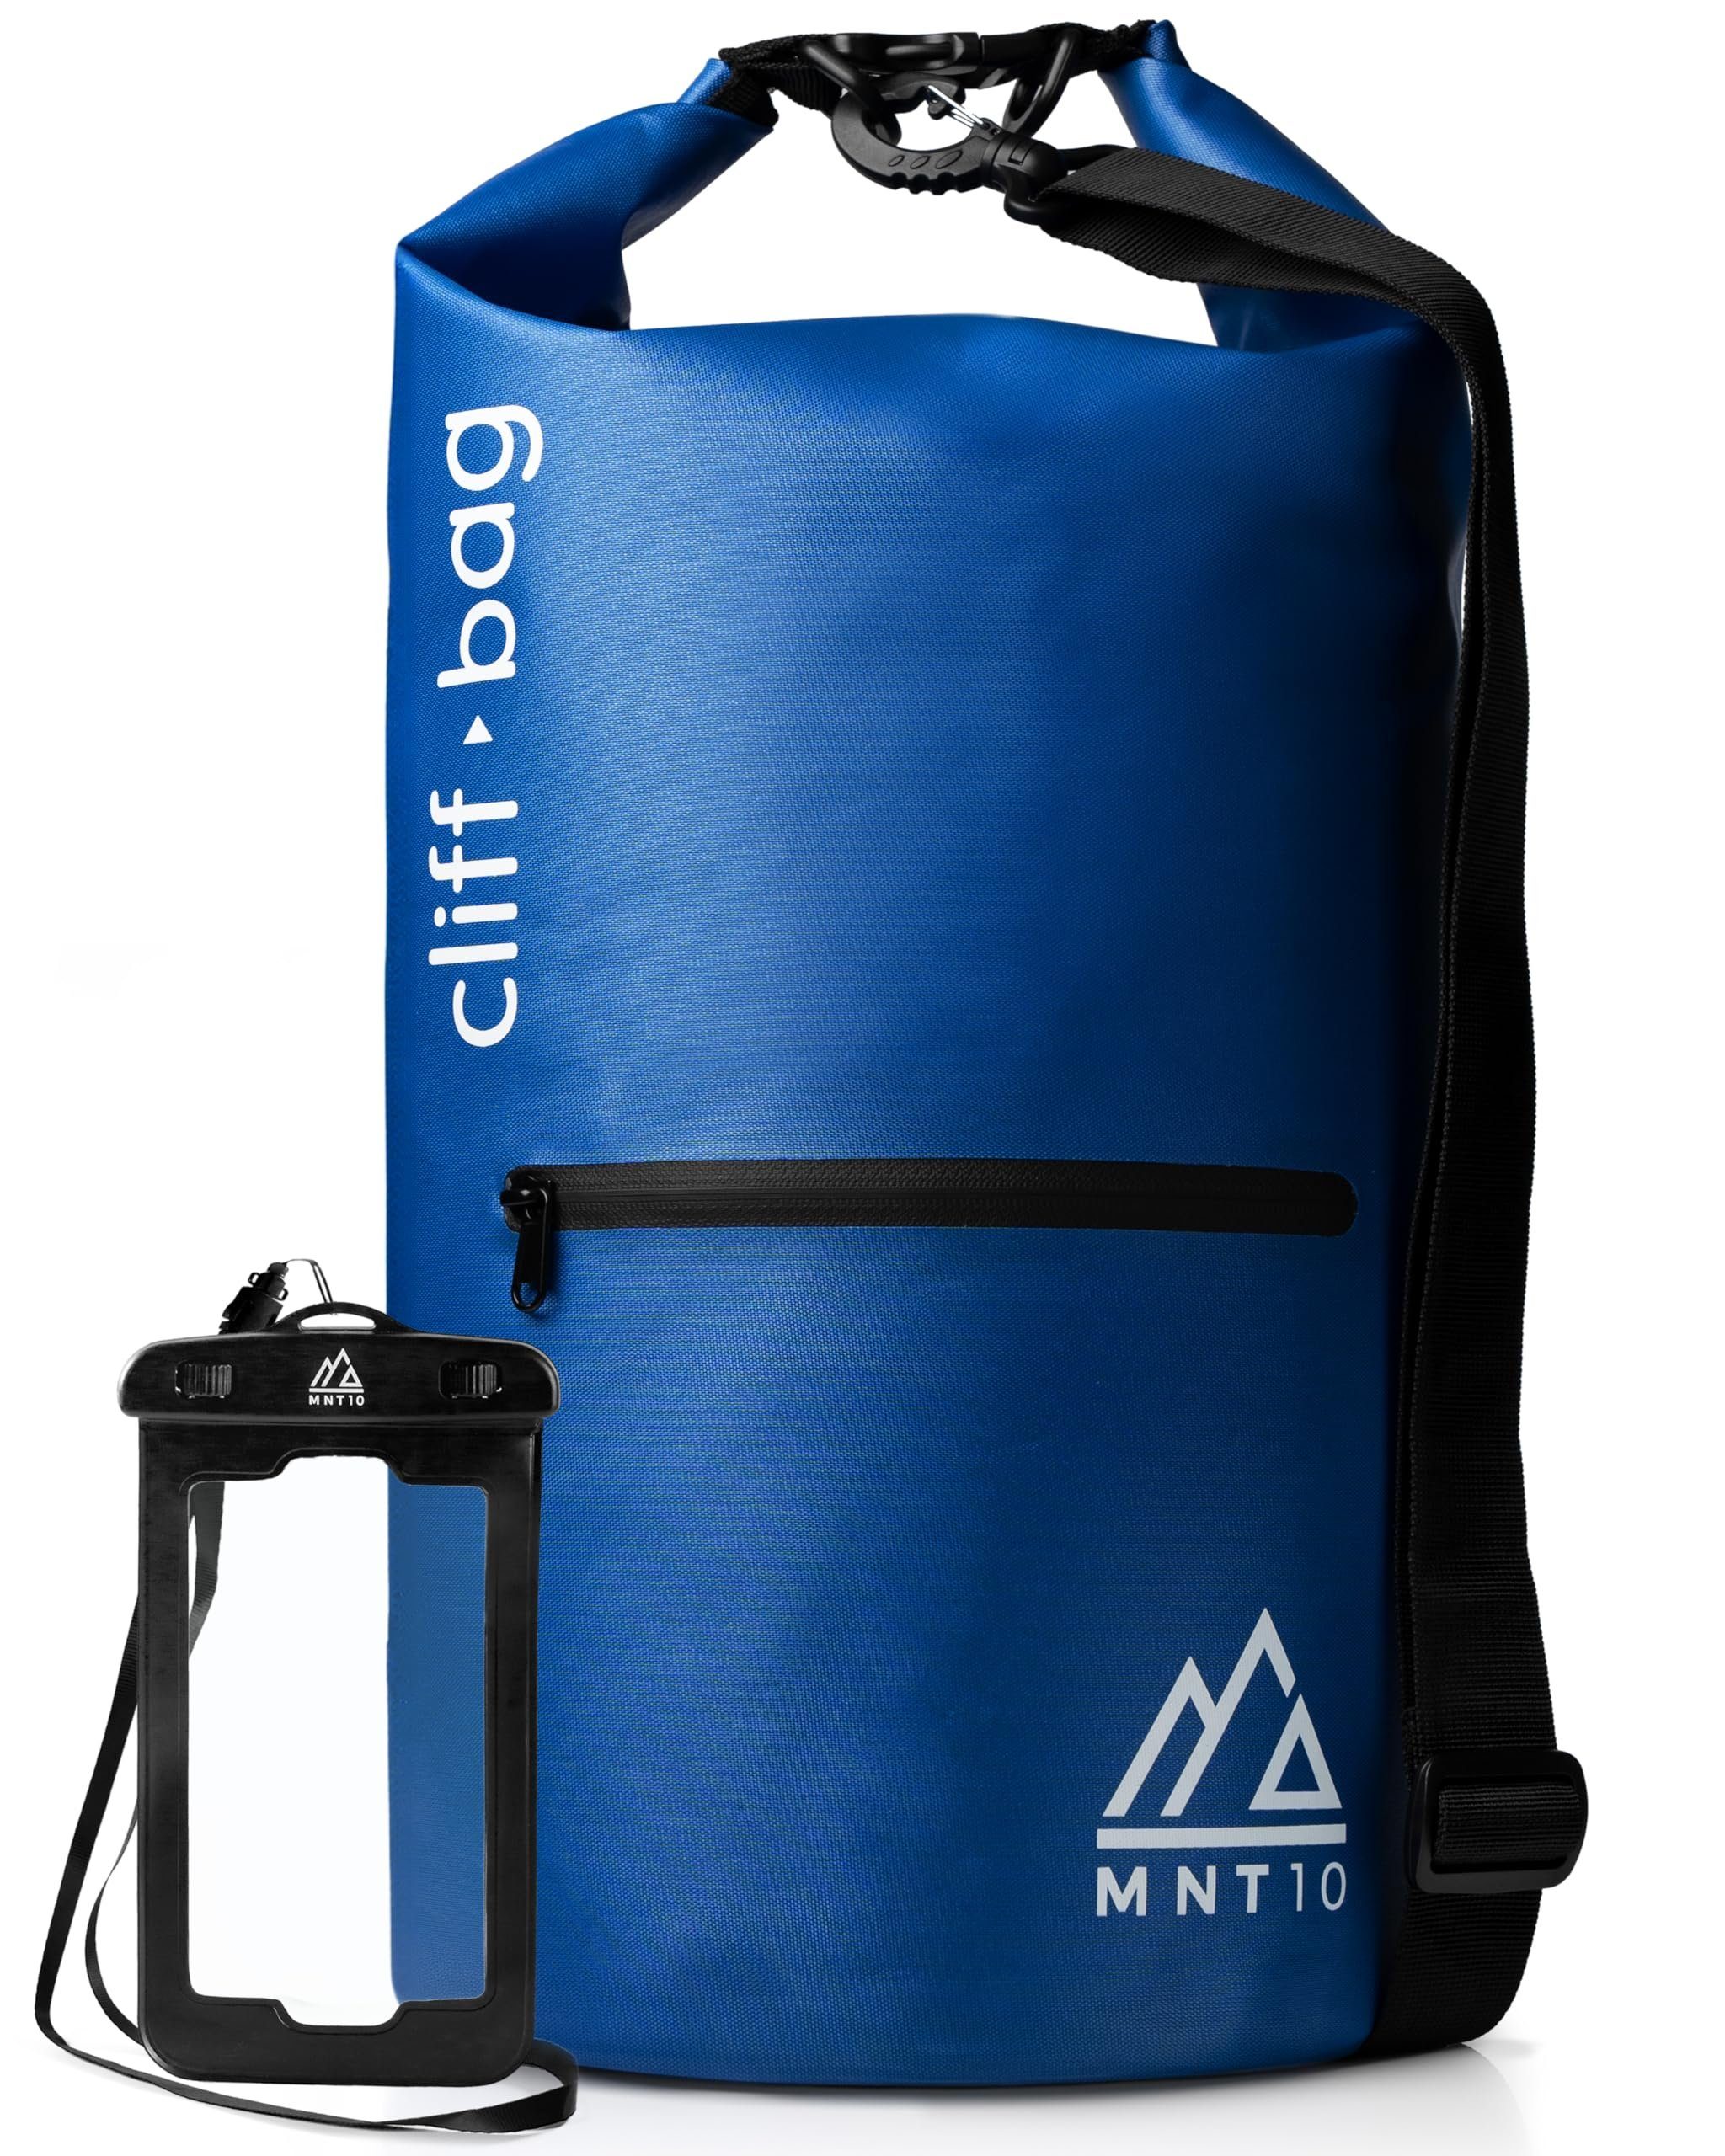 MNT10 Drybag MNT10 Dry Bag “Cliff-Bag” in 20L, 30L, 40L I Drybag Rucksack Ocean Blue